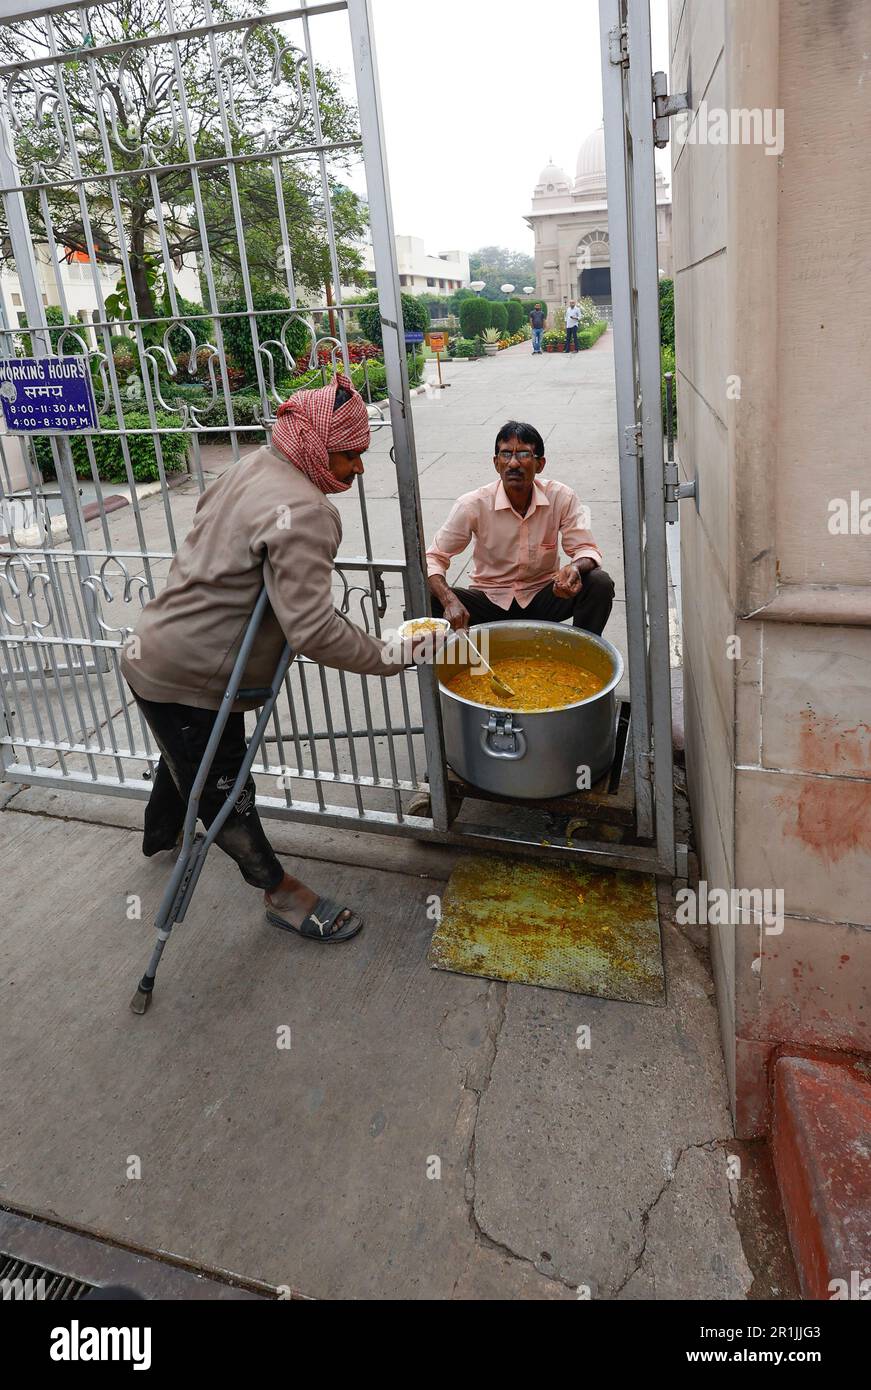 Ramakrishna Mission de la charité de New Delhi distribuant de la nourriture gratuite pour les défavorisés en face de l'Ashram à New Delhi, en Inde Banque D'Images